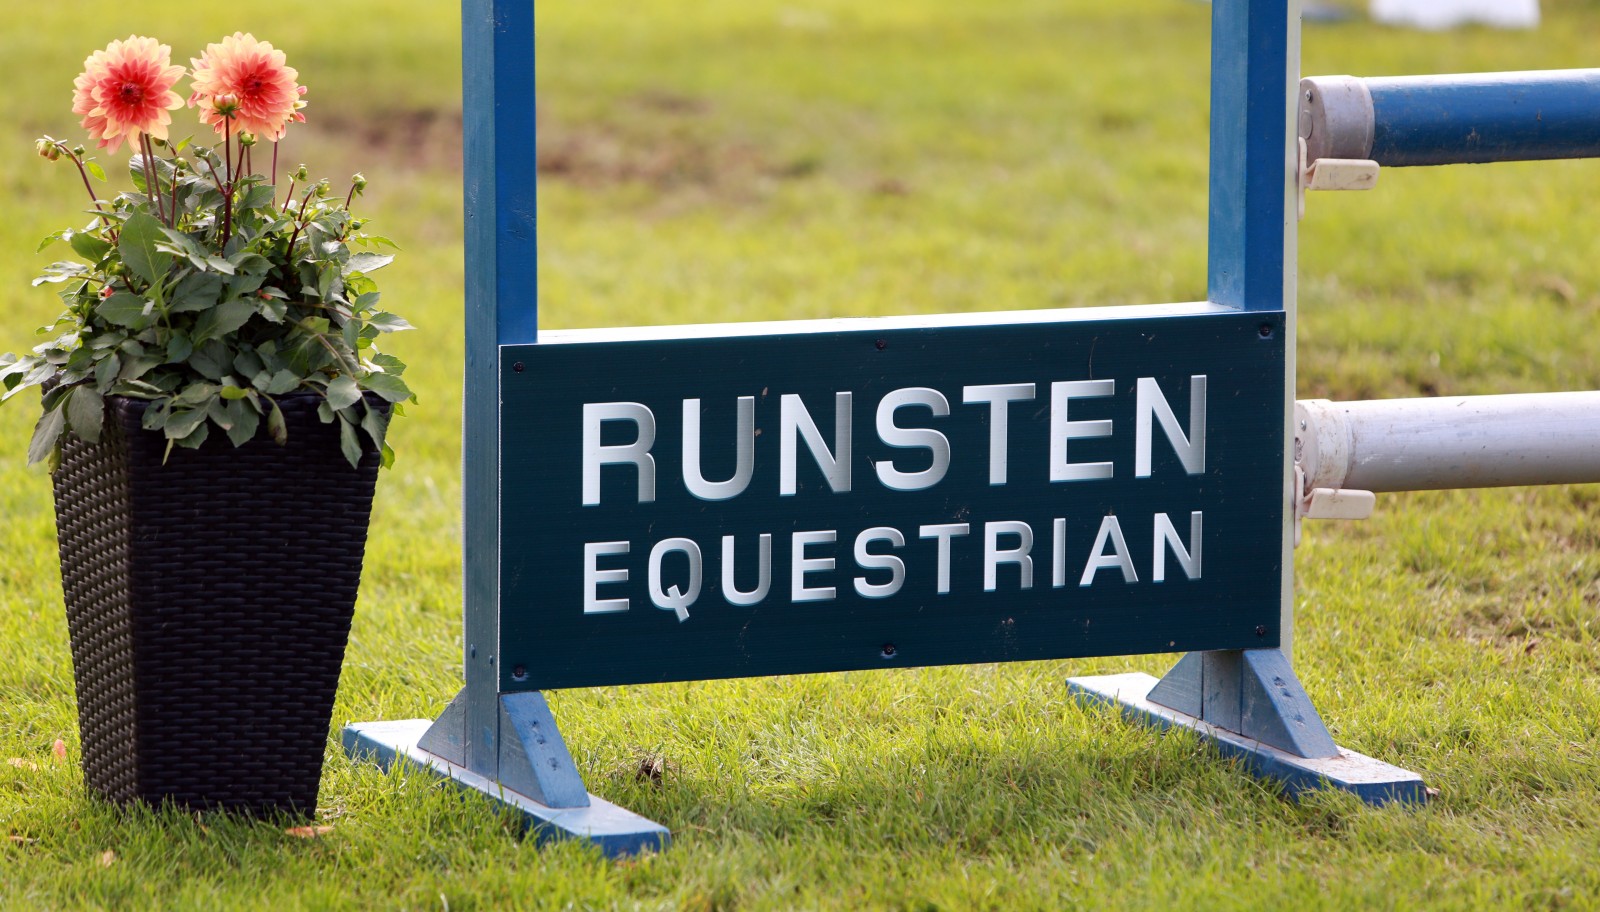 Nytt för 2018, Runsten Equestrian arrangerar 2 elittävlingar!